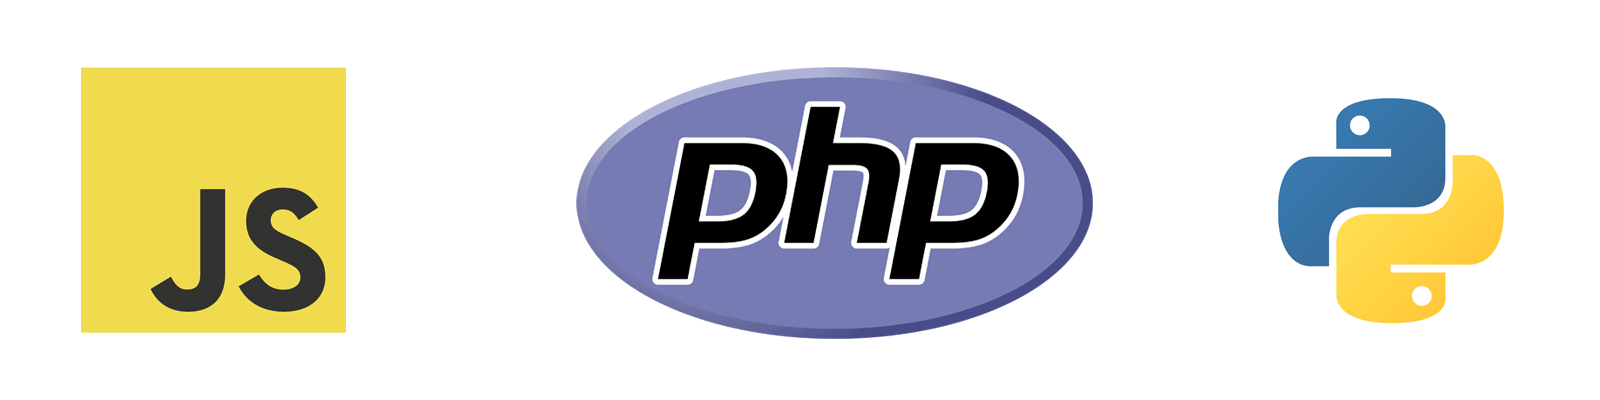 Javascript, PHP, and Python